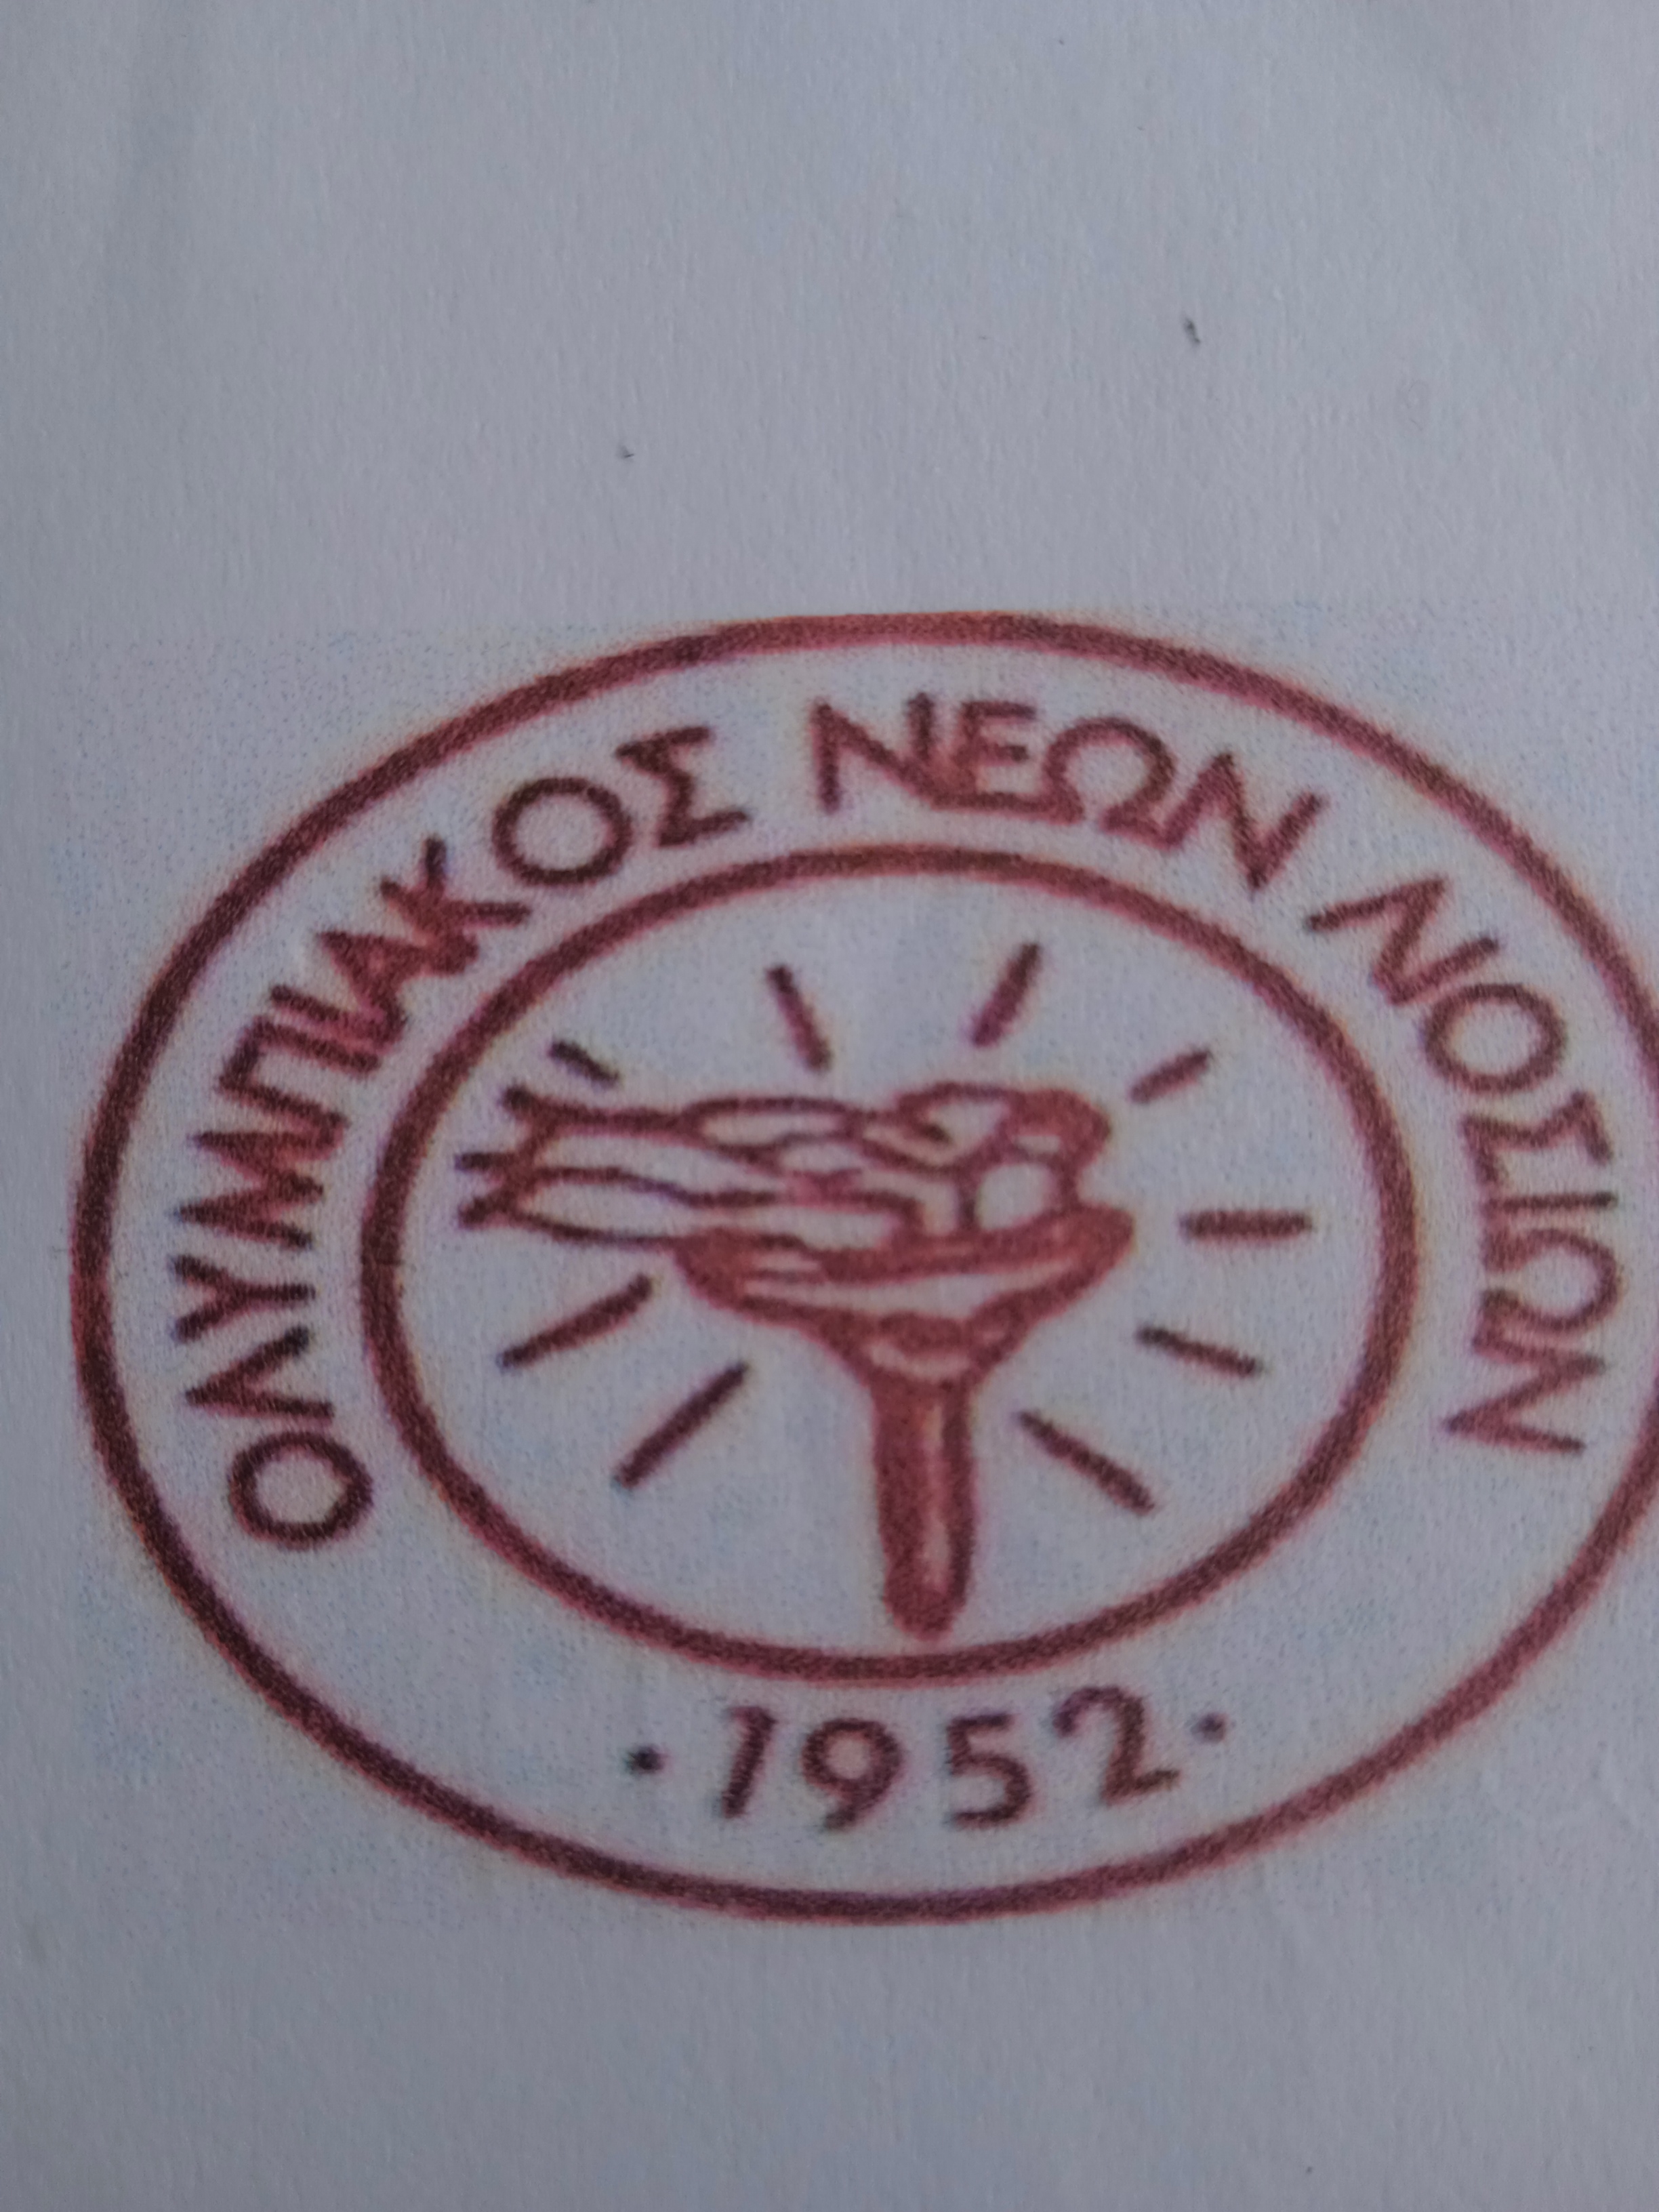 club-logo